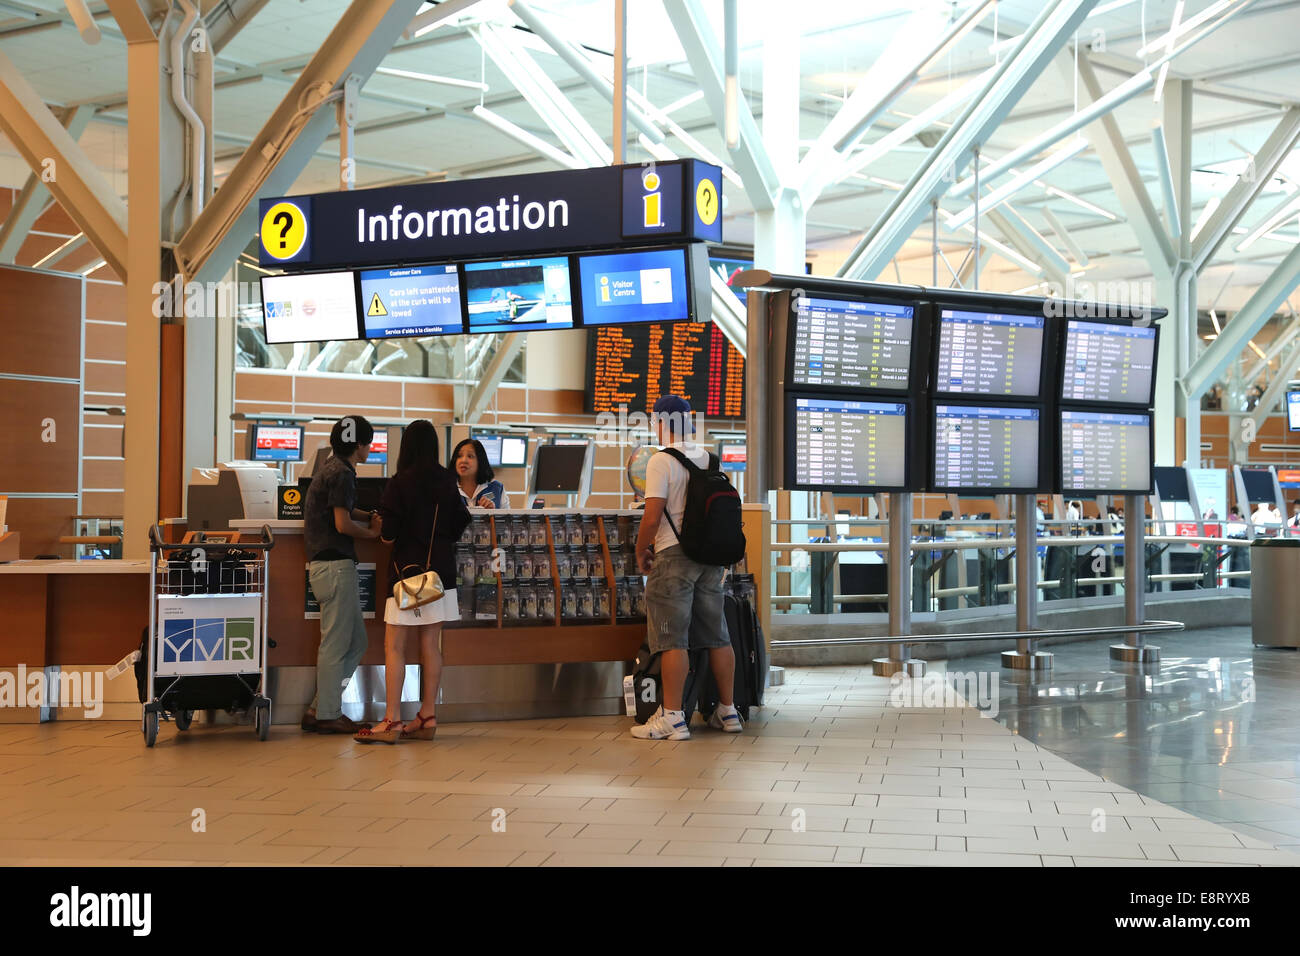 Vancouver, BC Kanada - 13. September 2014: Menschen Fragen einige Informationen Insdie YVR Flughafen in Vancouver BC Kanada. Stockfoto